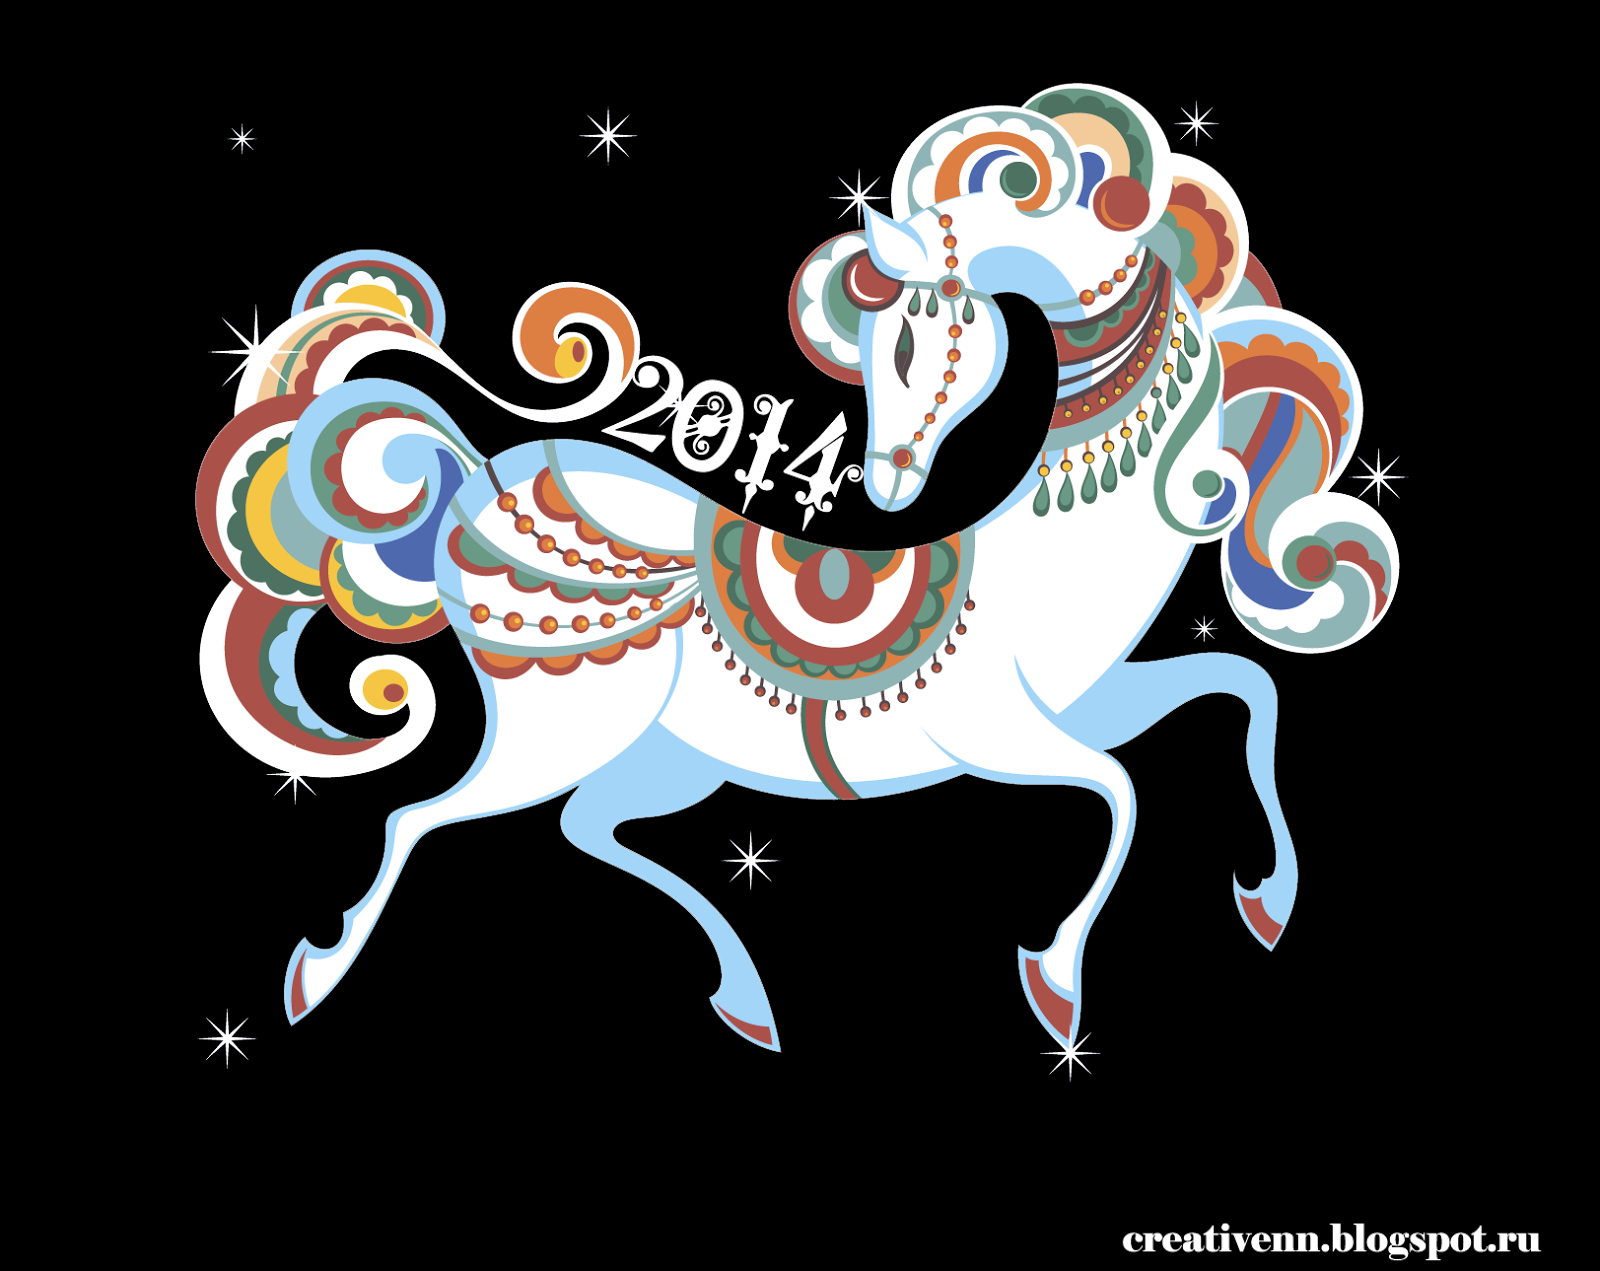 Клипарты 2014 к году лошади - лошадь. : На крыльях вдохновения
